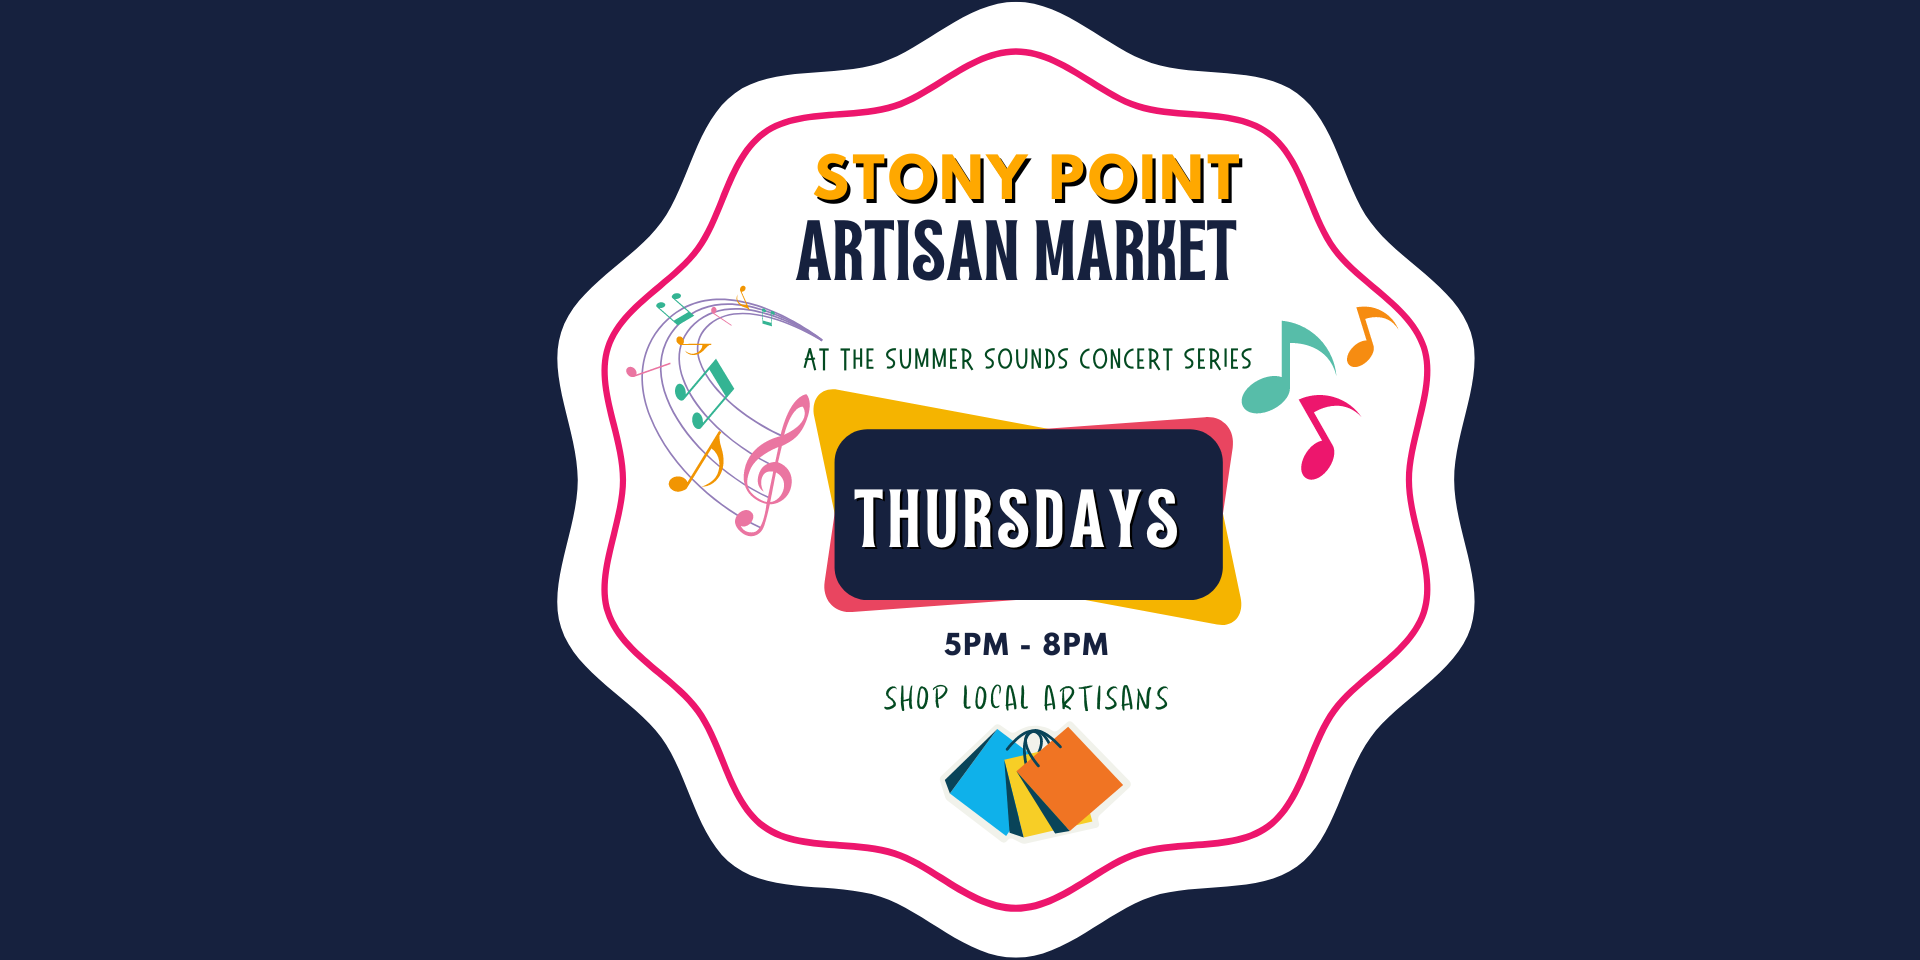 Stony Point Artisan Market promotional image